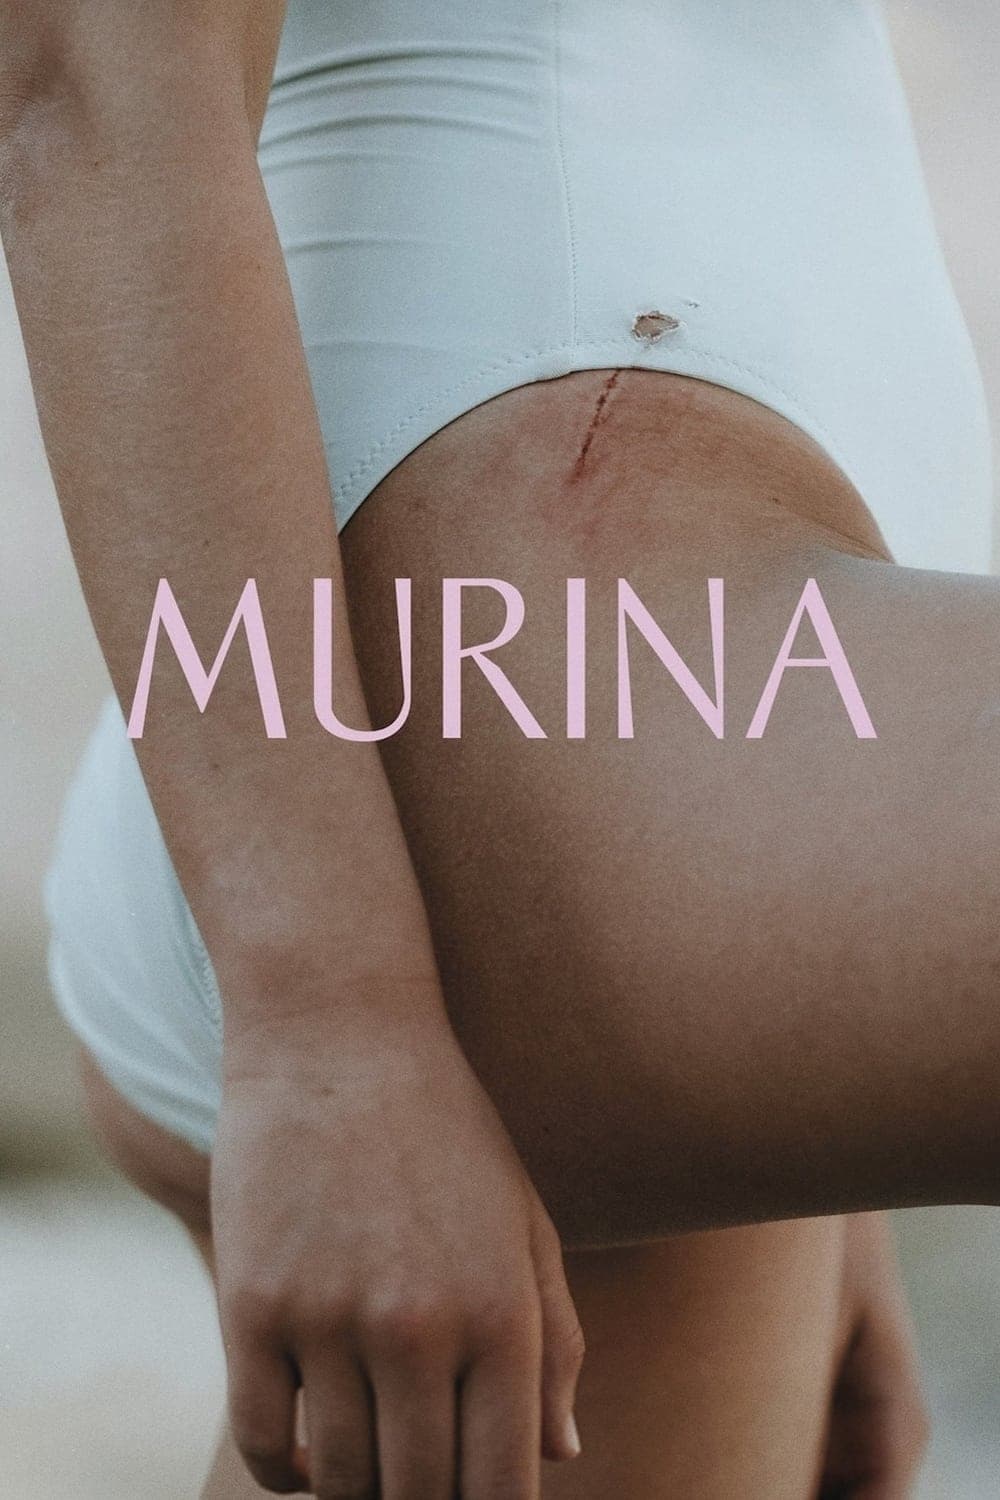 Murina - The Phoenix